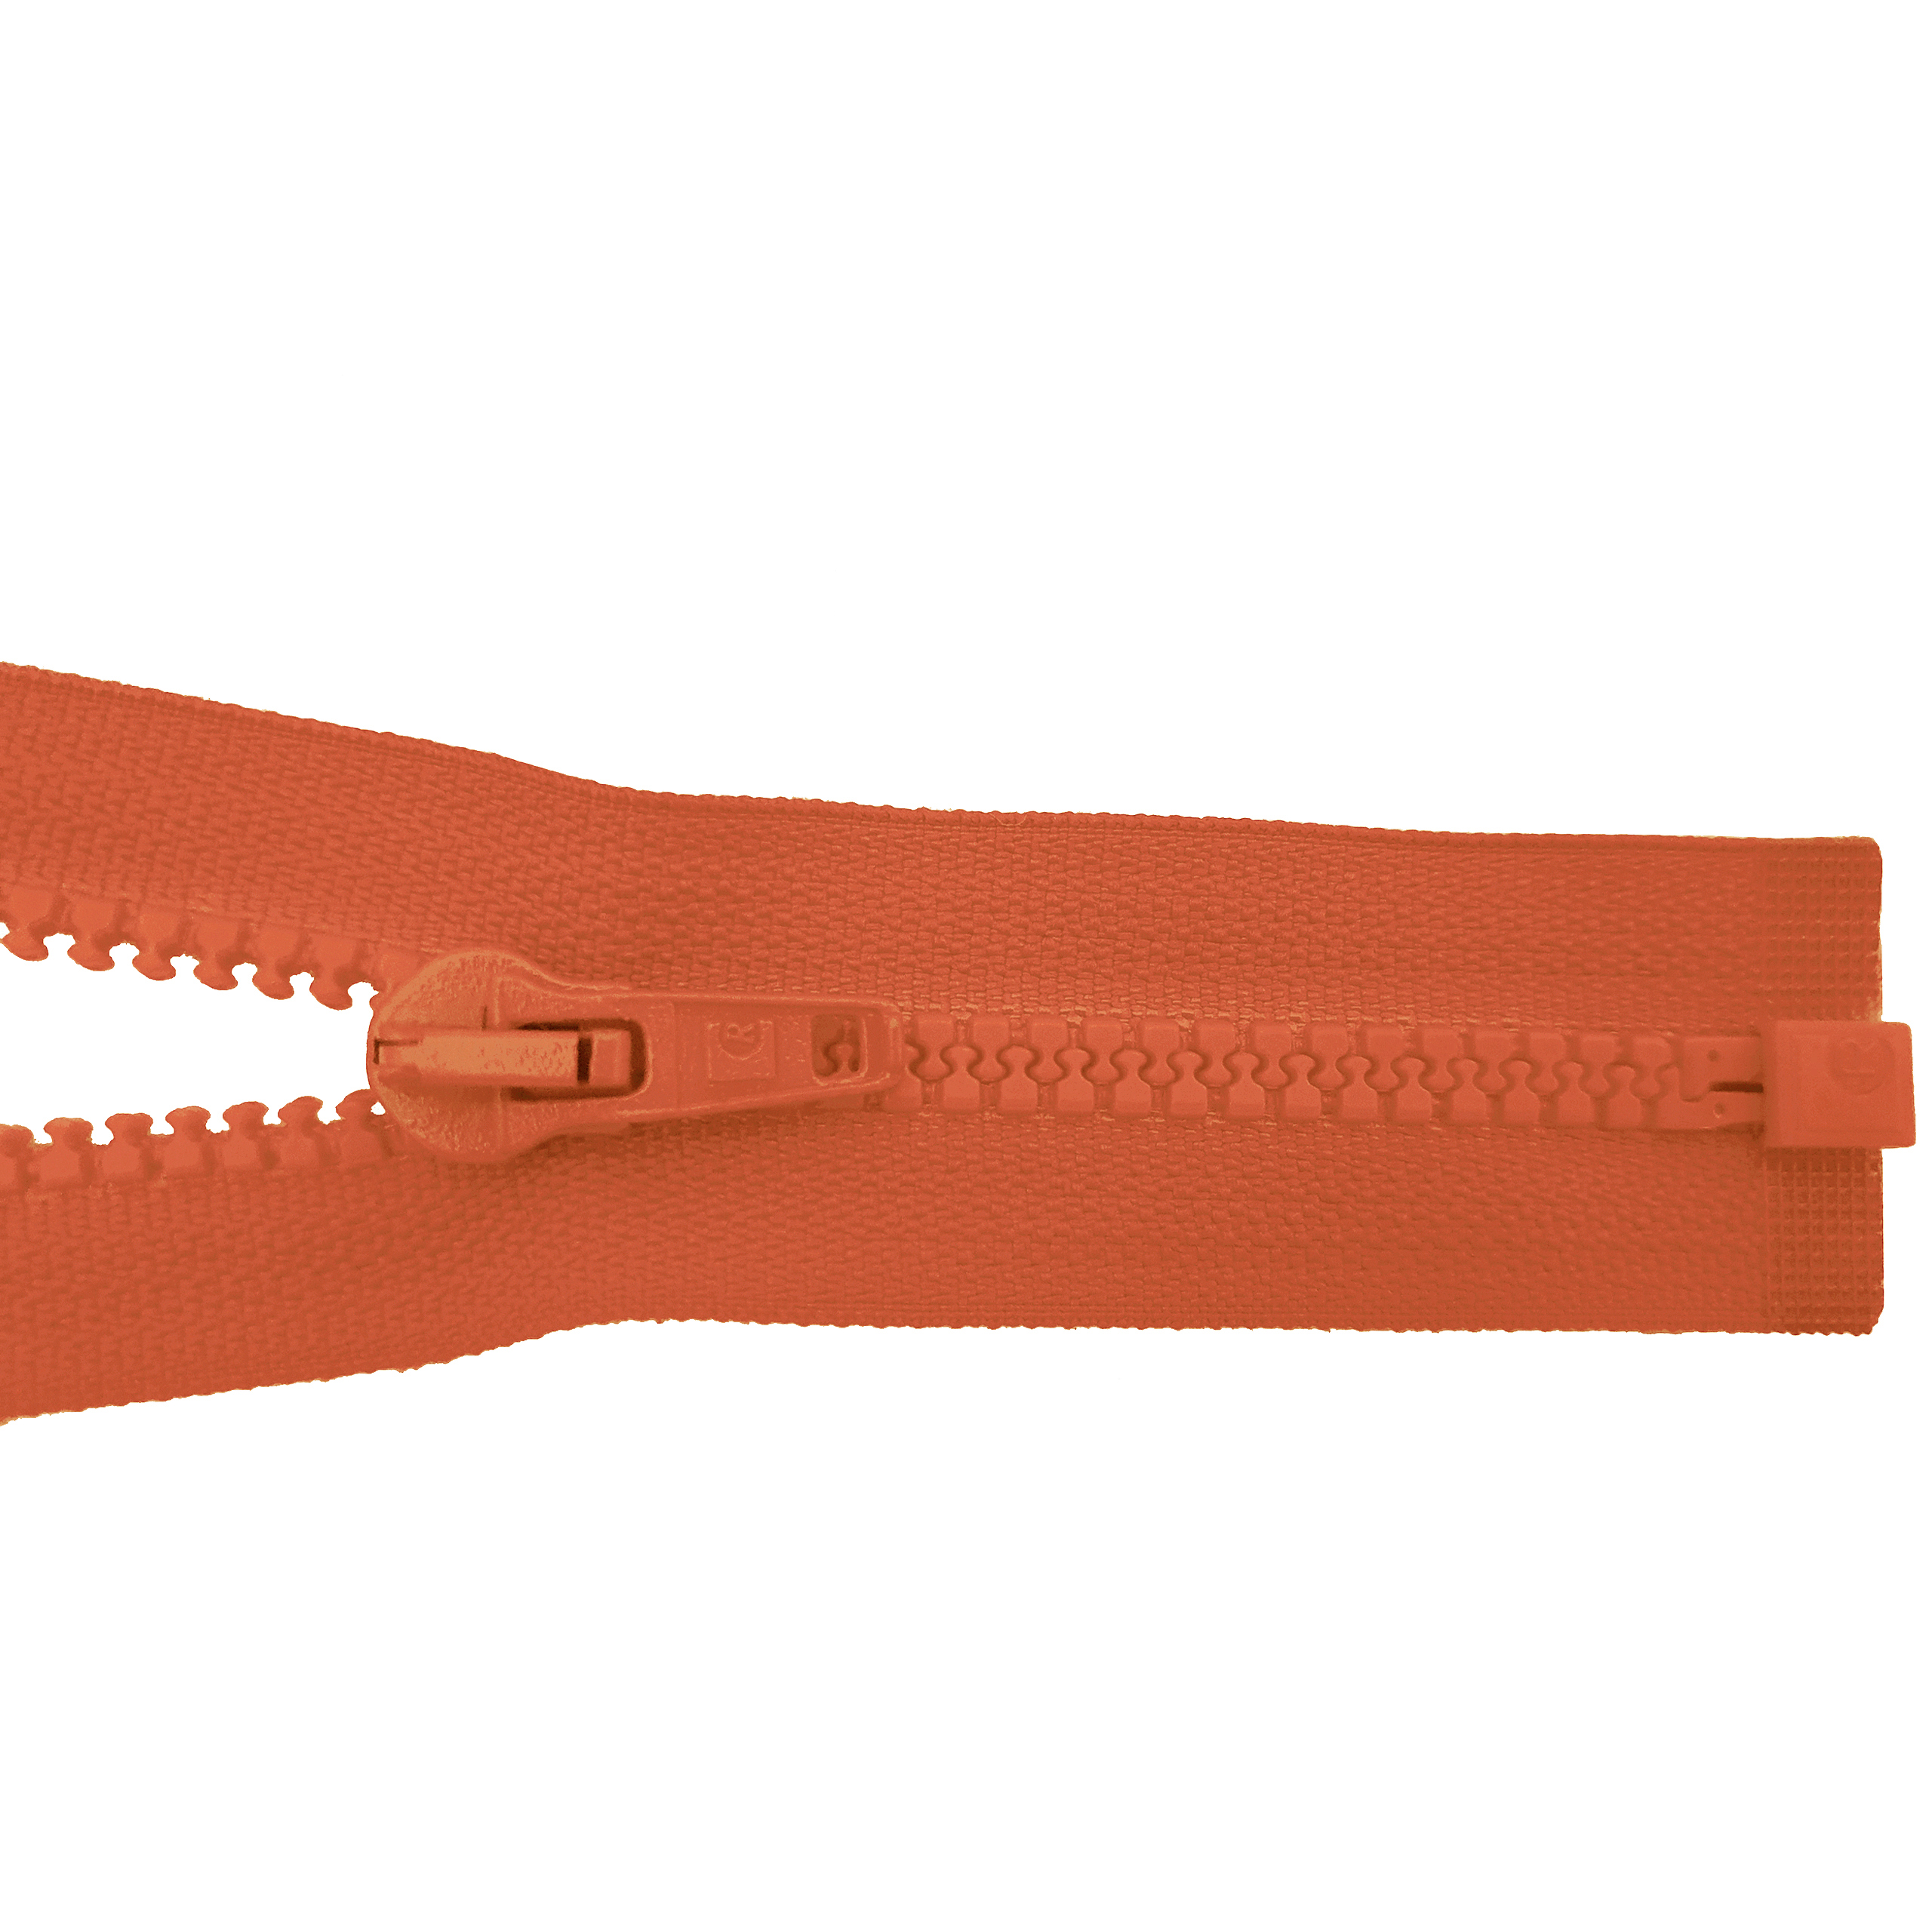 Reißverschluss 80cm, teilbar, Kstoff Zähne breit, neonorange, hochwertiger Marken-Reißverschluss von Rubi/Barcelona